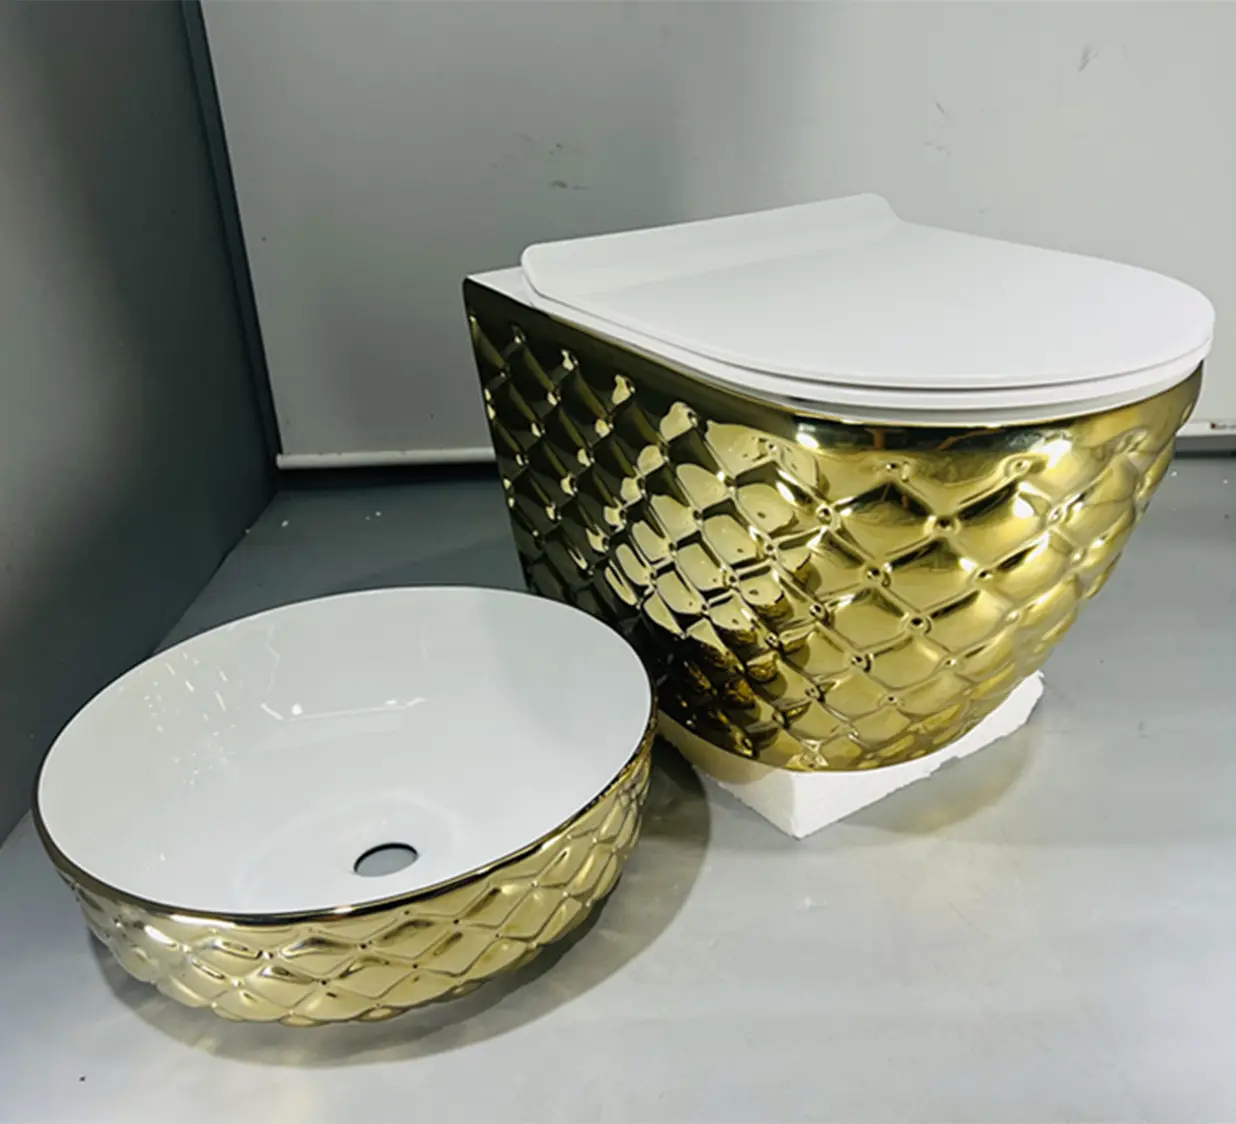 Keramik Gold Farbe Toiletten schüssel Waschbecken Bad goldene Wand hing Toilette neuesten Toiletten schüssel Design